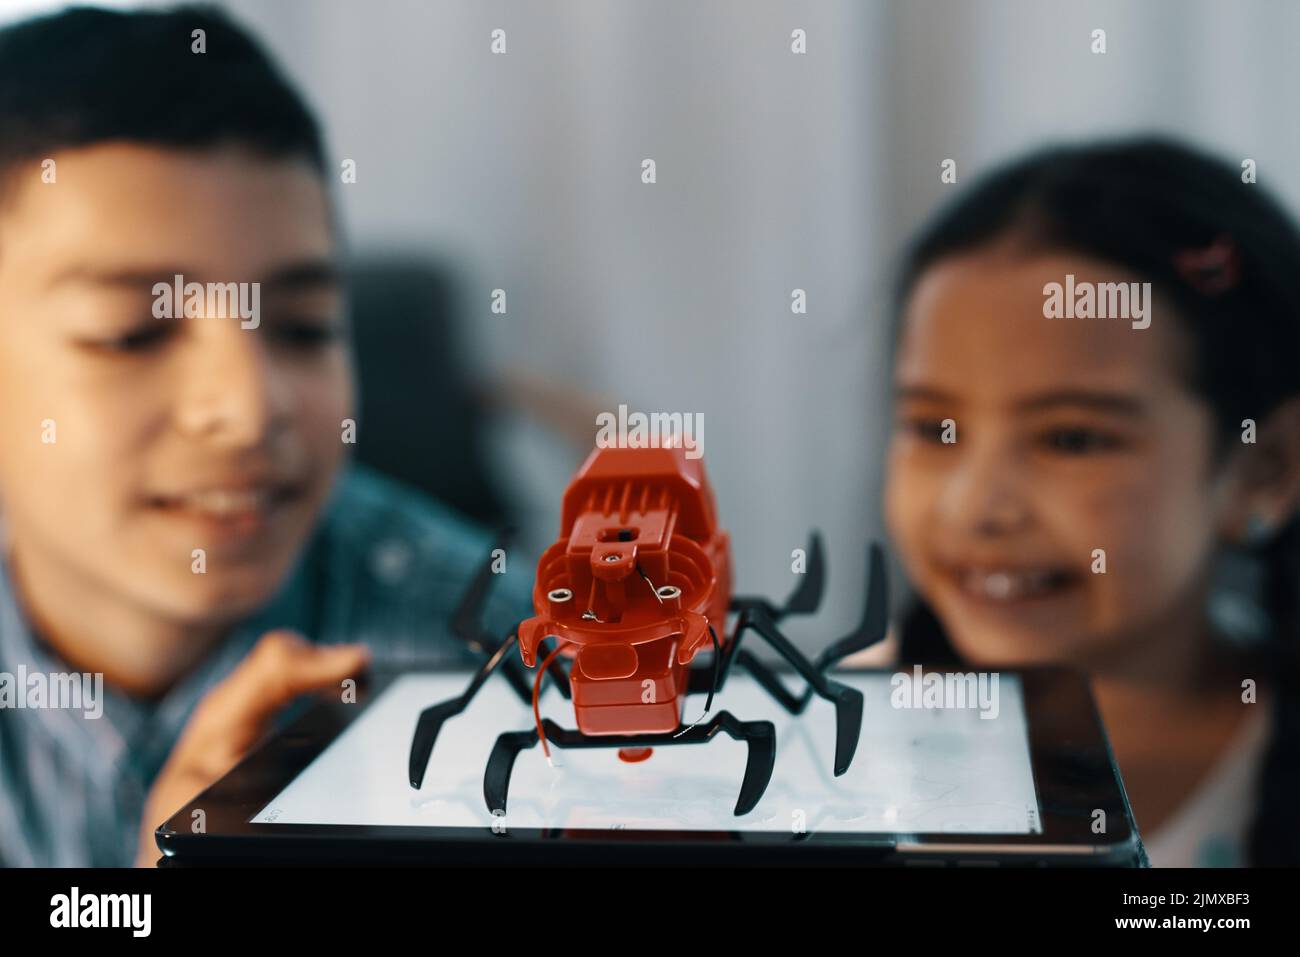 Nous nous sommes surfaits sur celui-ci. Deux jeunes frères et sœurs regardent et admirent leur araignée de jouet robotique à la maison. Banque D'Images